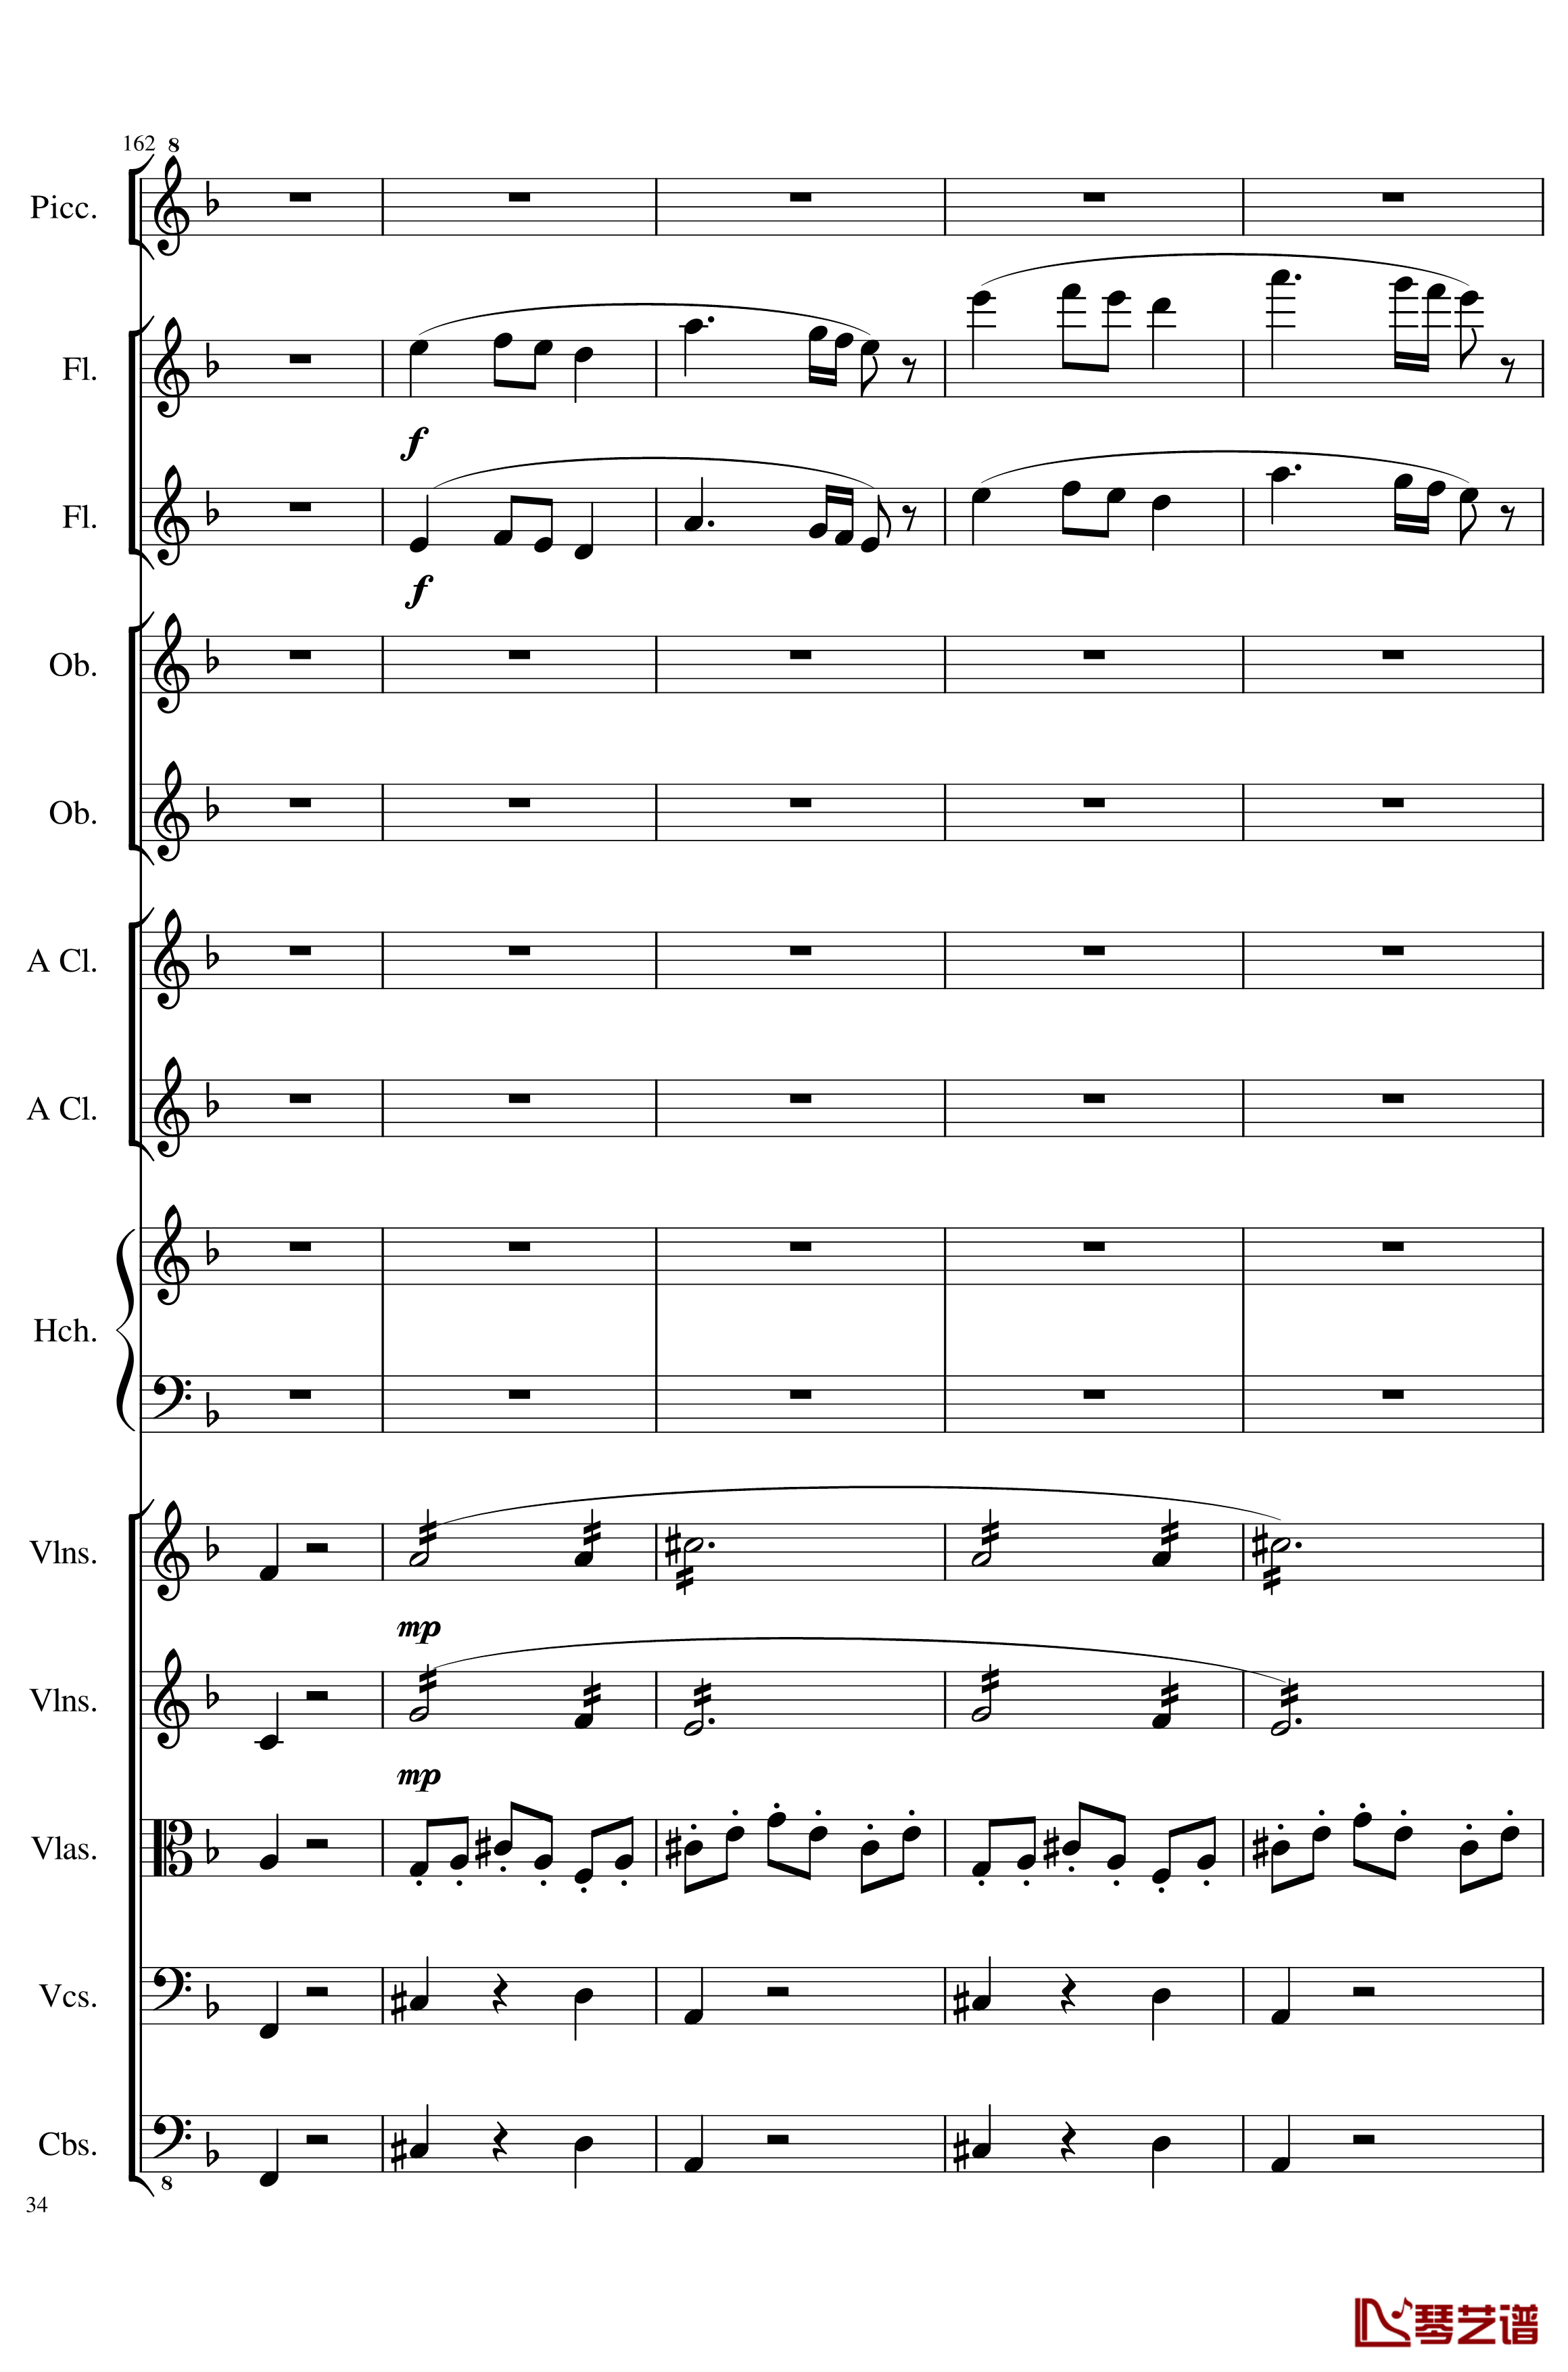 7 Contredanses No.1-7, Op.124钢琴谱-7首乡村舞曲，第一至第七，作品124-一个球34